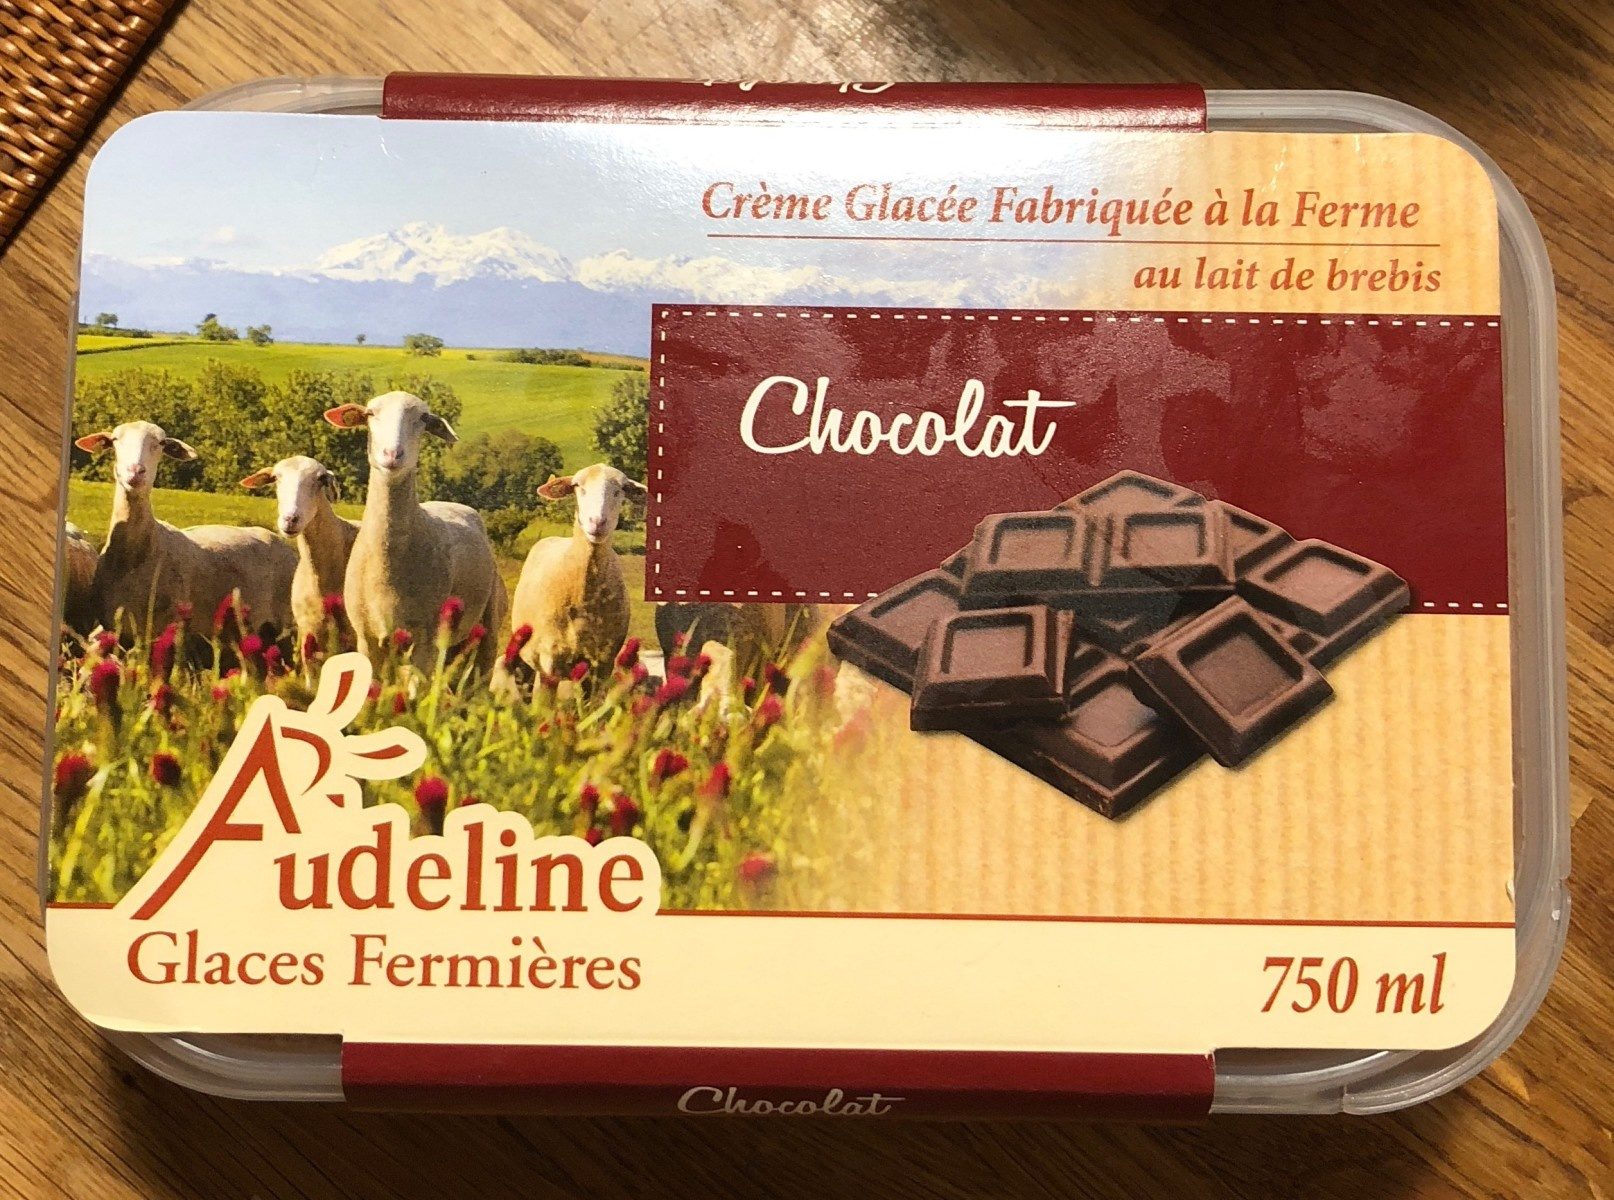 Glaces Fermières au lait de brebis chocolat - Produit